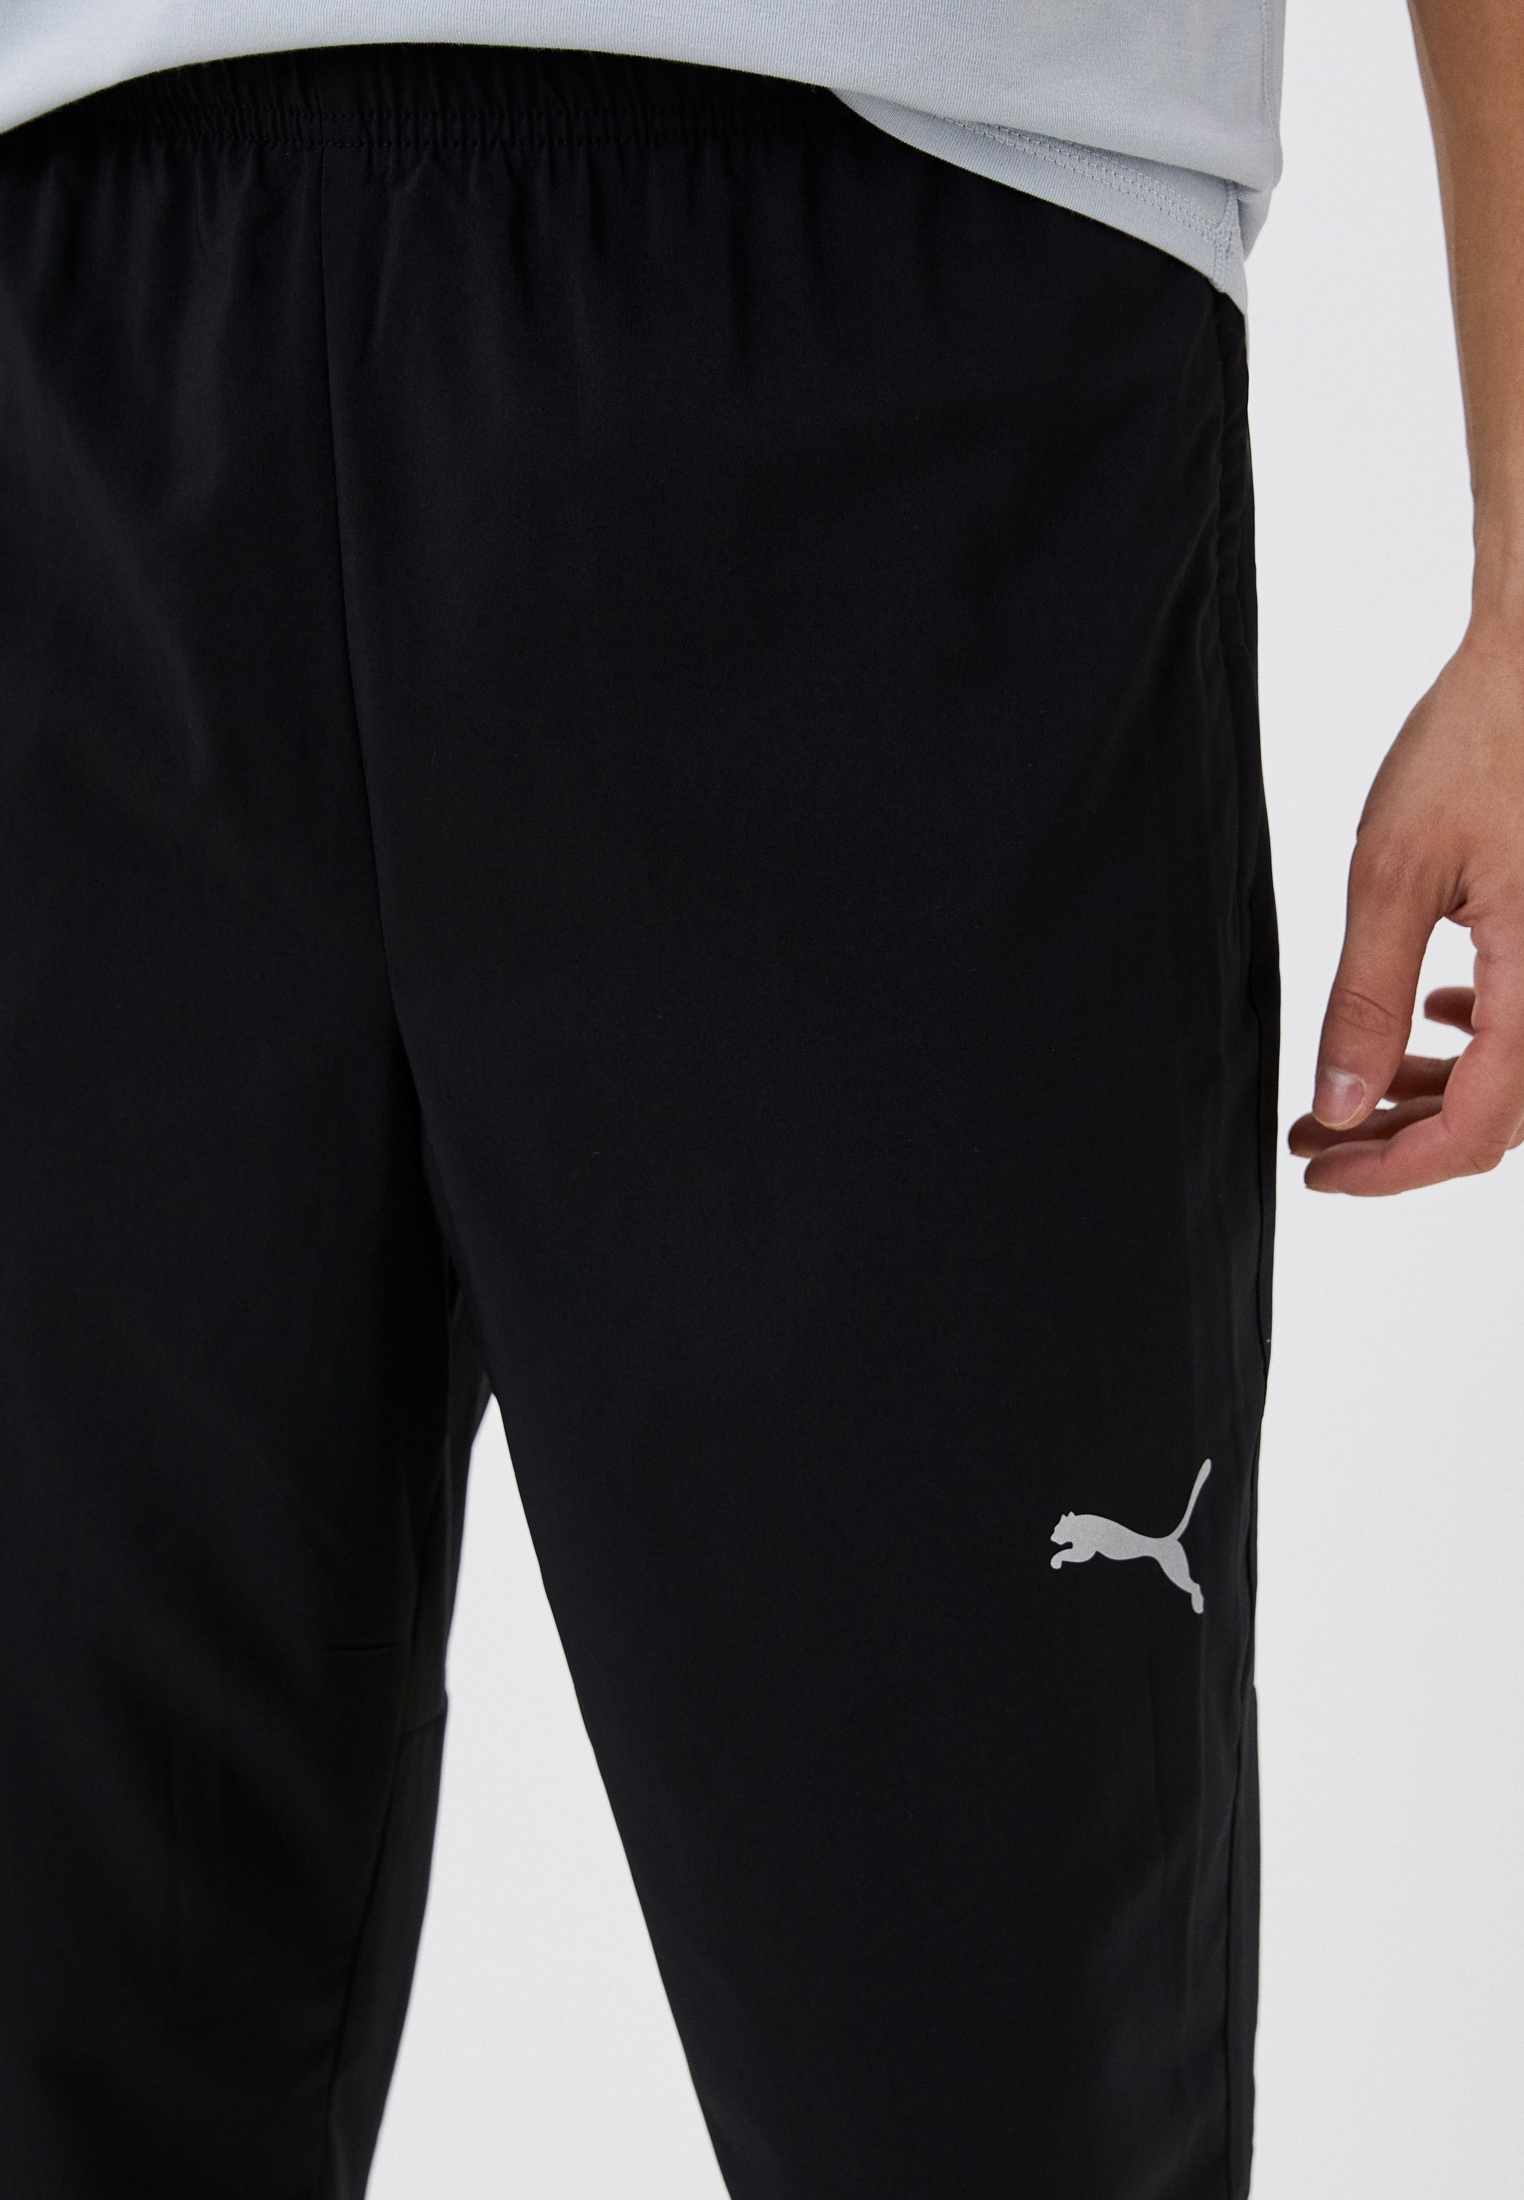 Брюки спортивные PUMA RUN FAVORITE TAPERED PANT M, цвет: черный,RTLACY135101 — купить в интернет-магазине Lamoda